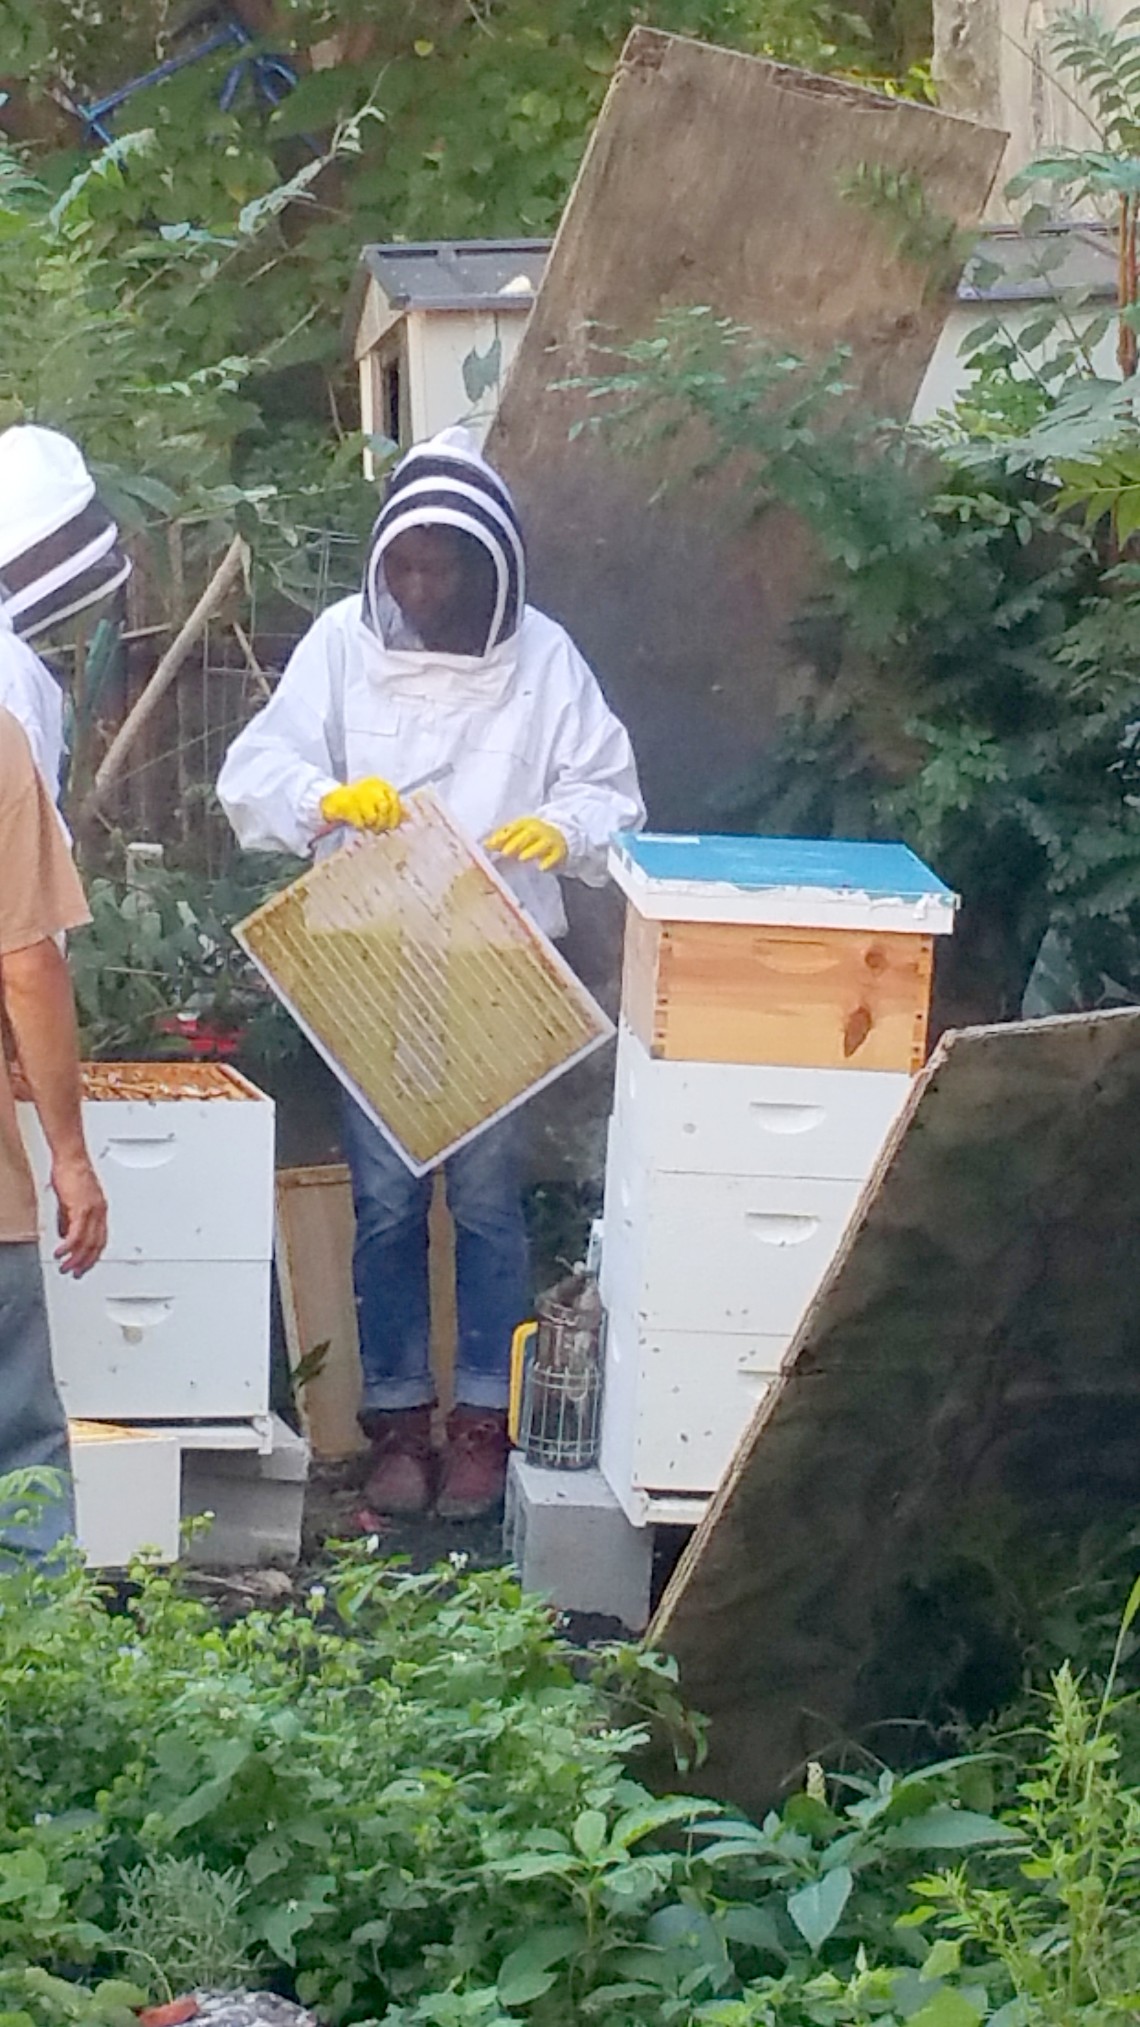 Beekeepers at 462 Halsey Garden, Bklyn